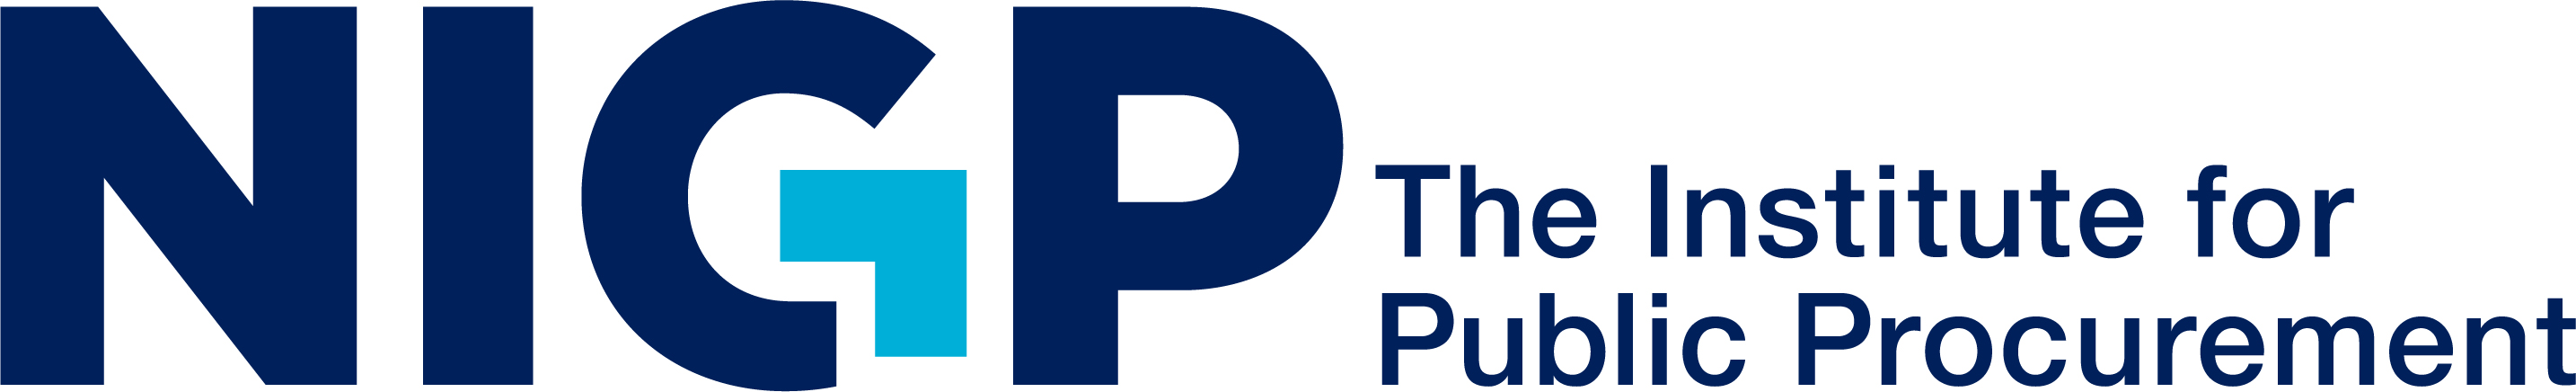 NIGP - The institute for public procurement